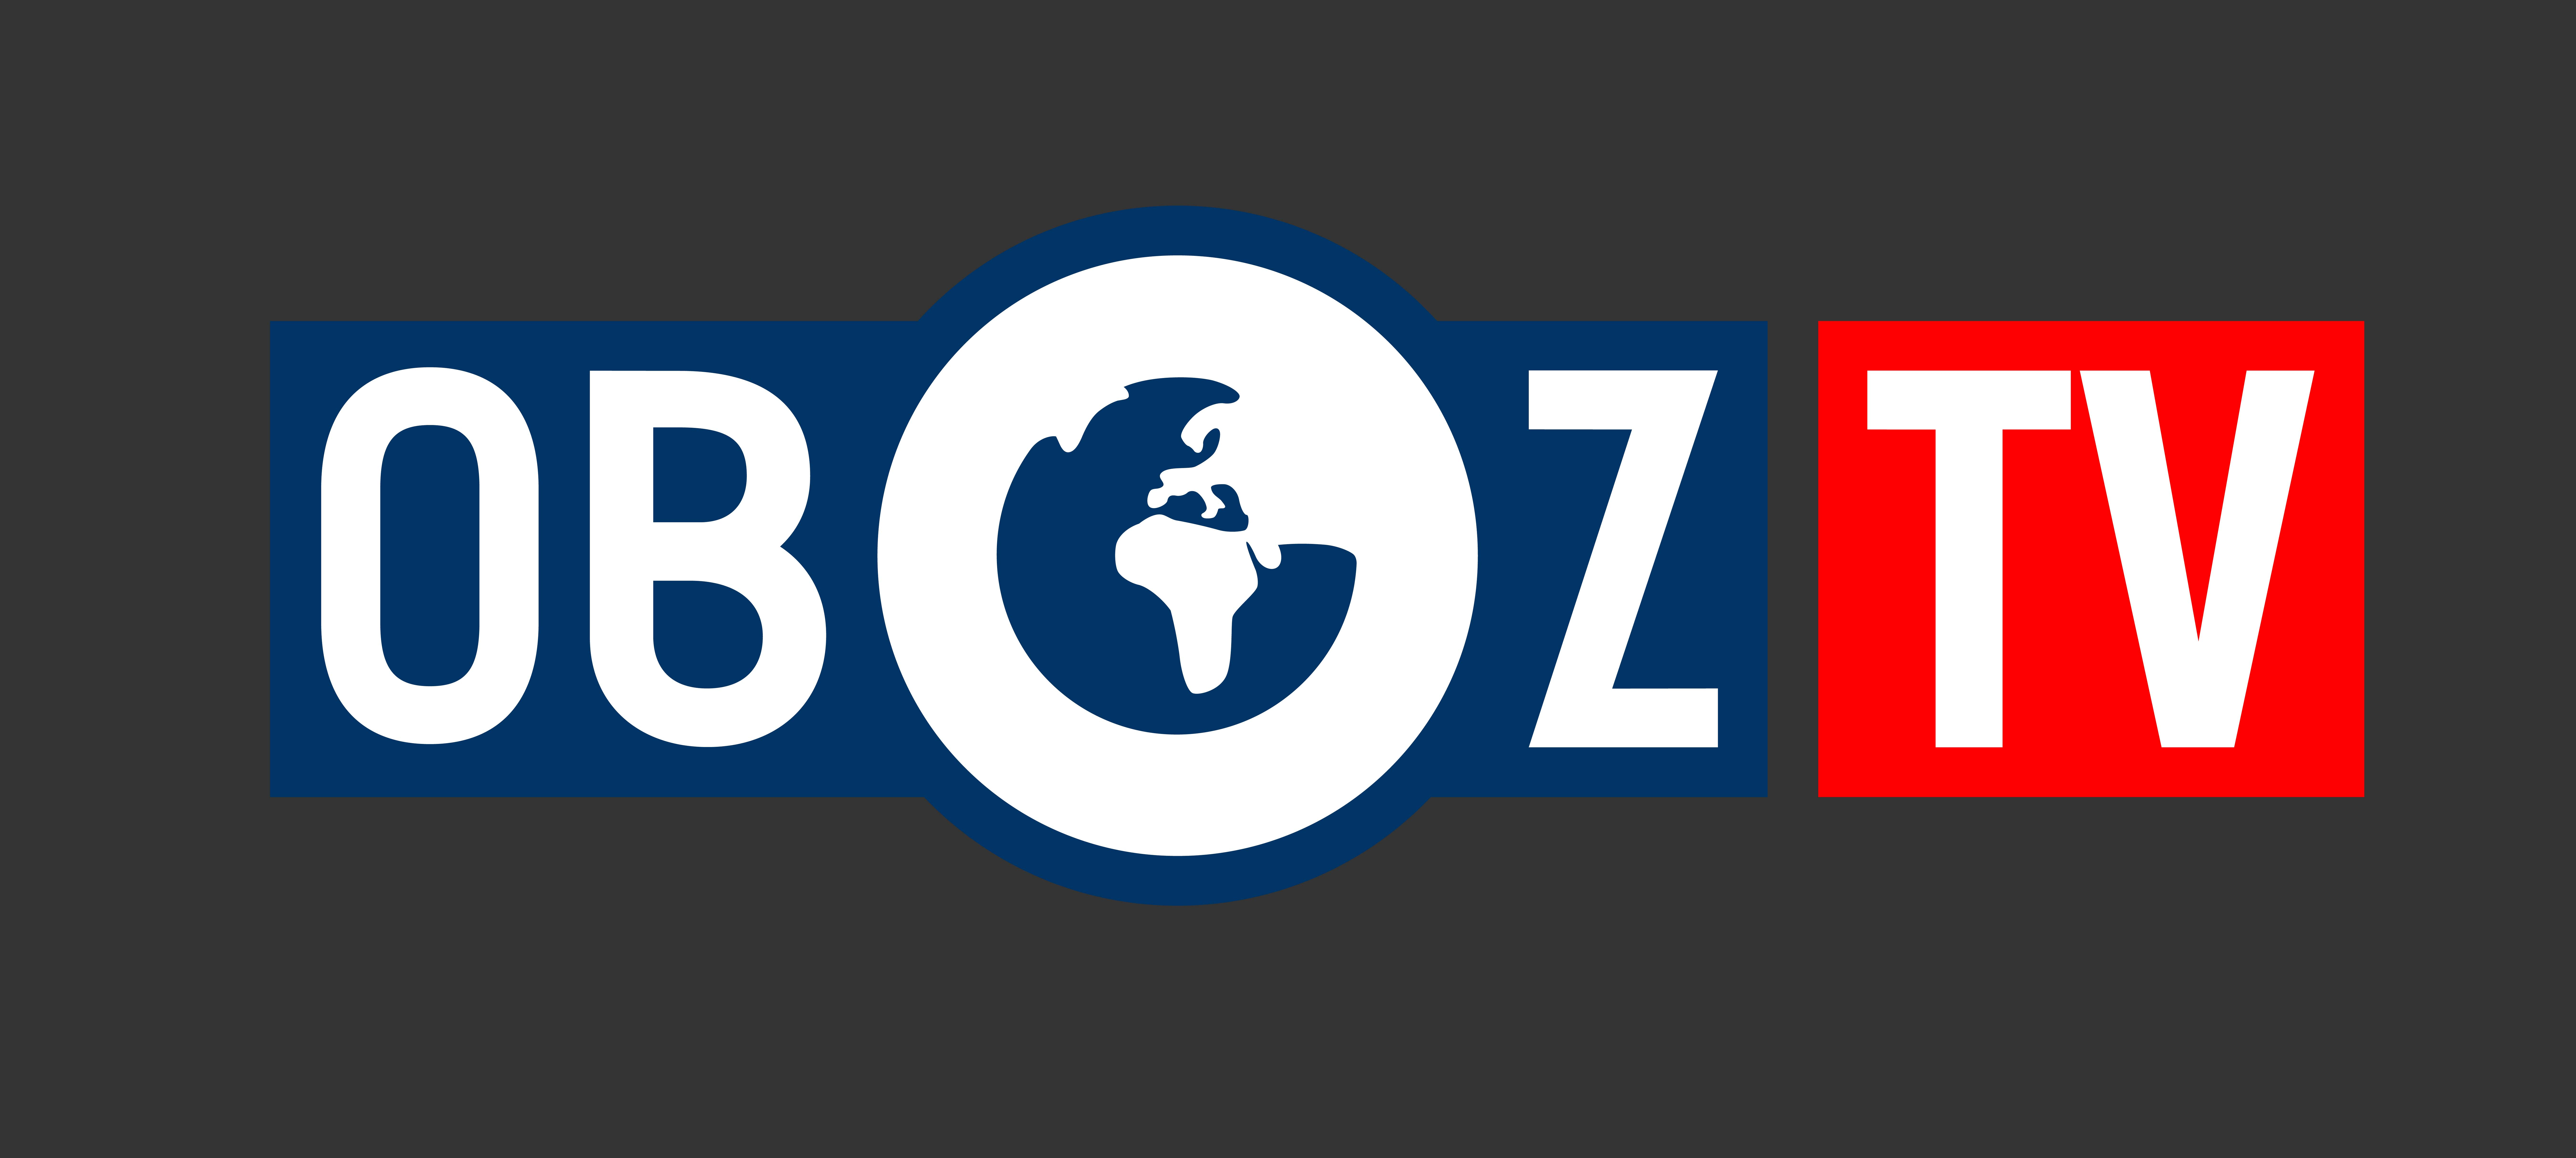 Телеканал ObozTV розпочинає прямі трансляції Суперліги Парі-Матч з баскетболу